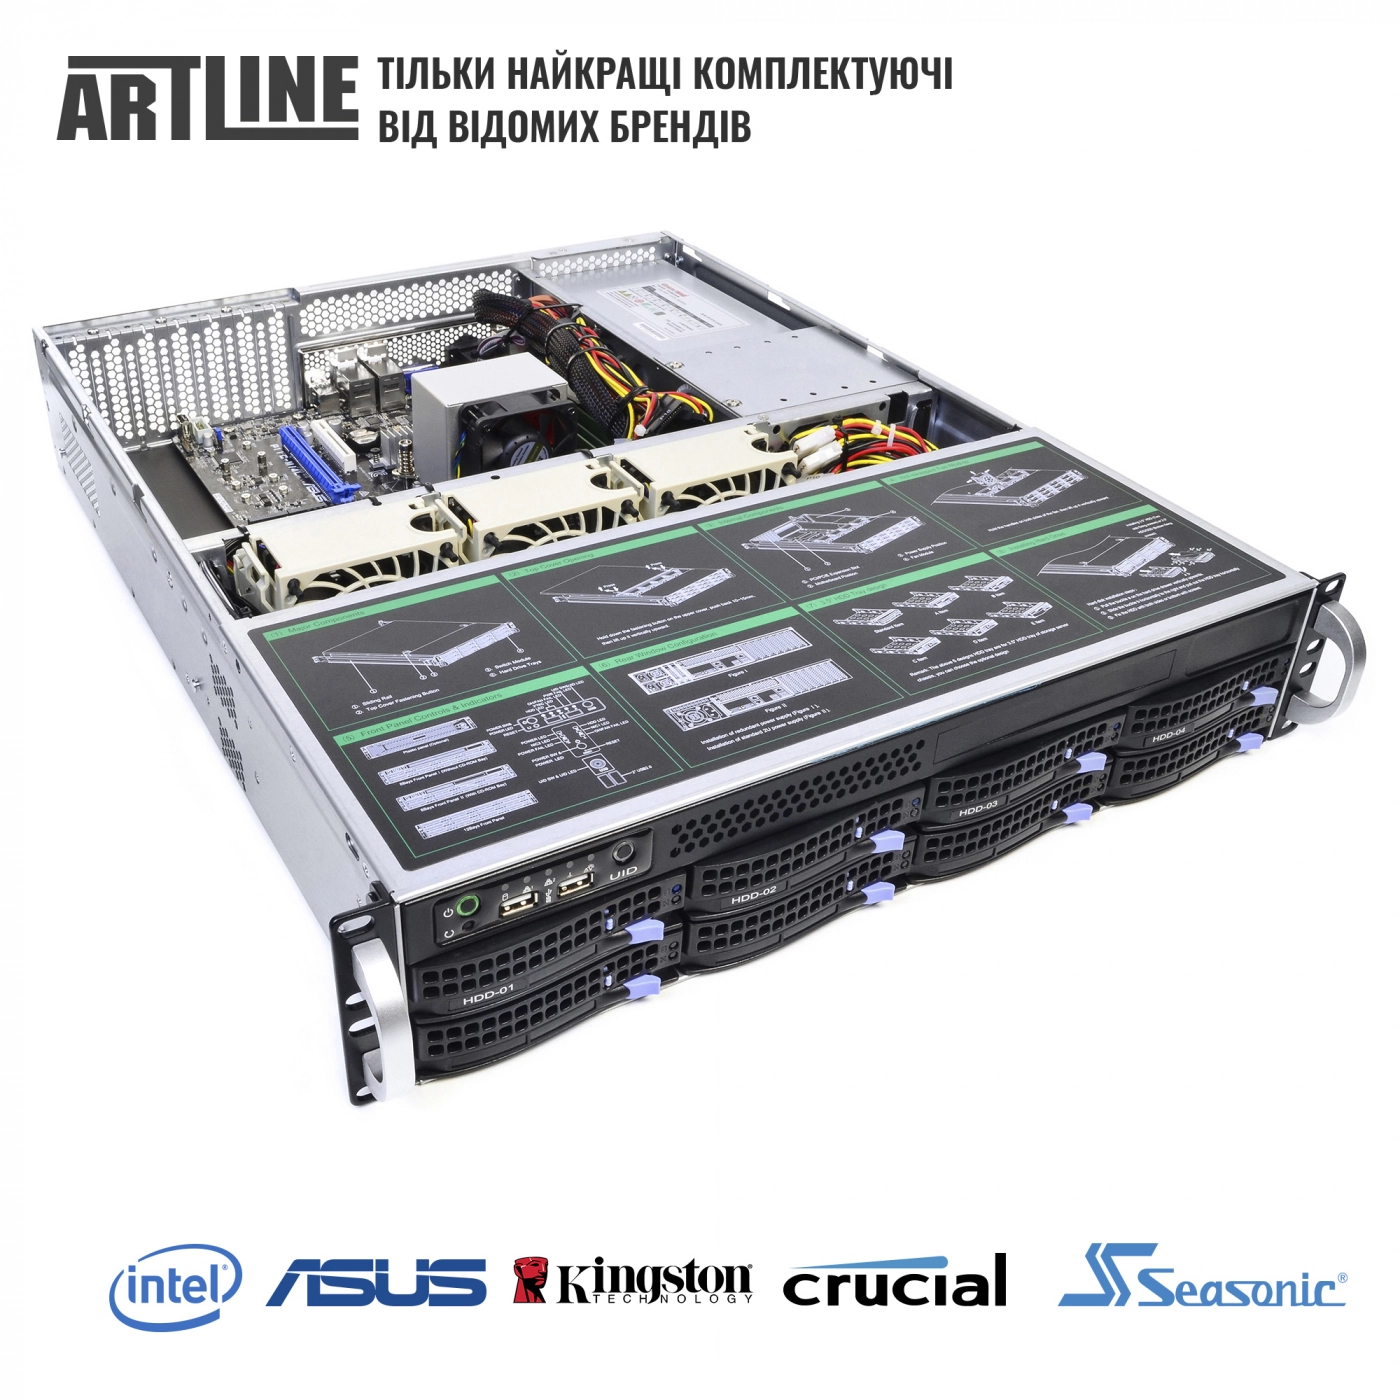 Купить Сервер ARTLINE Business R37v16 - фото 6